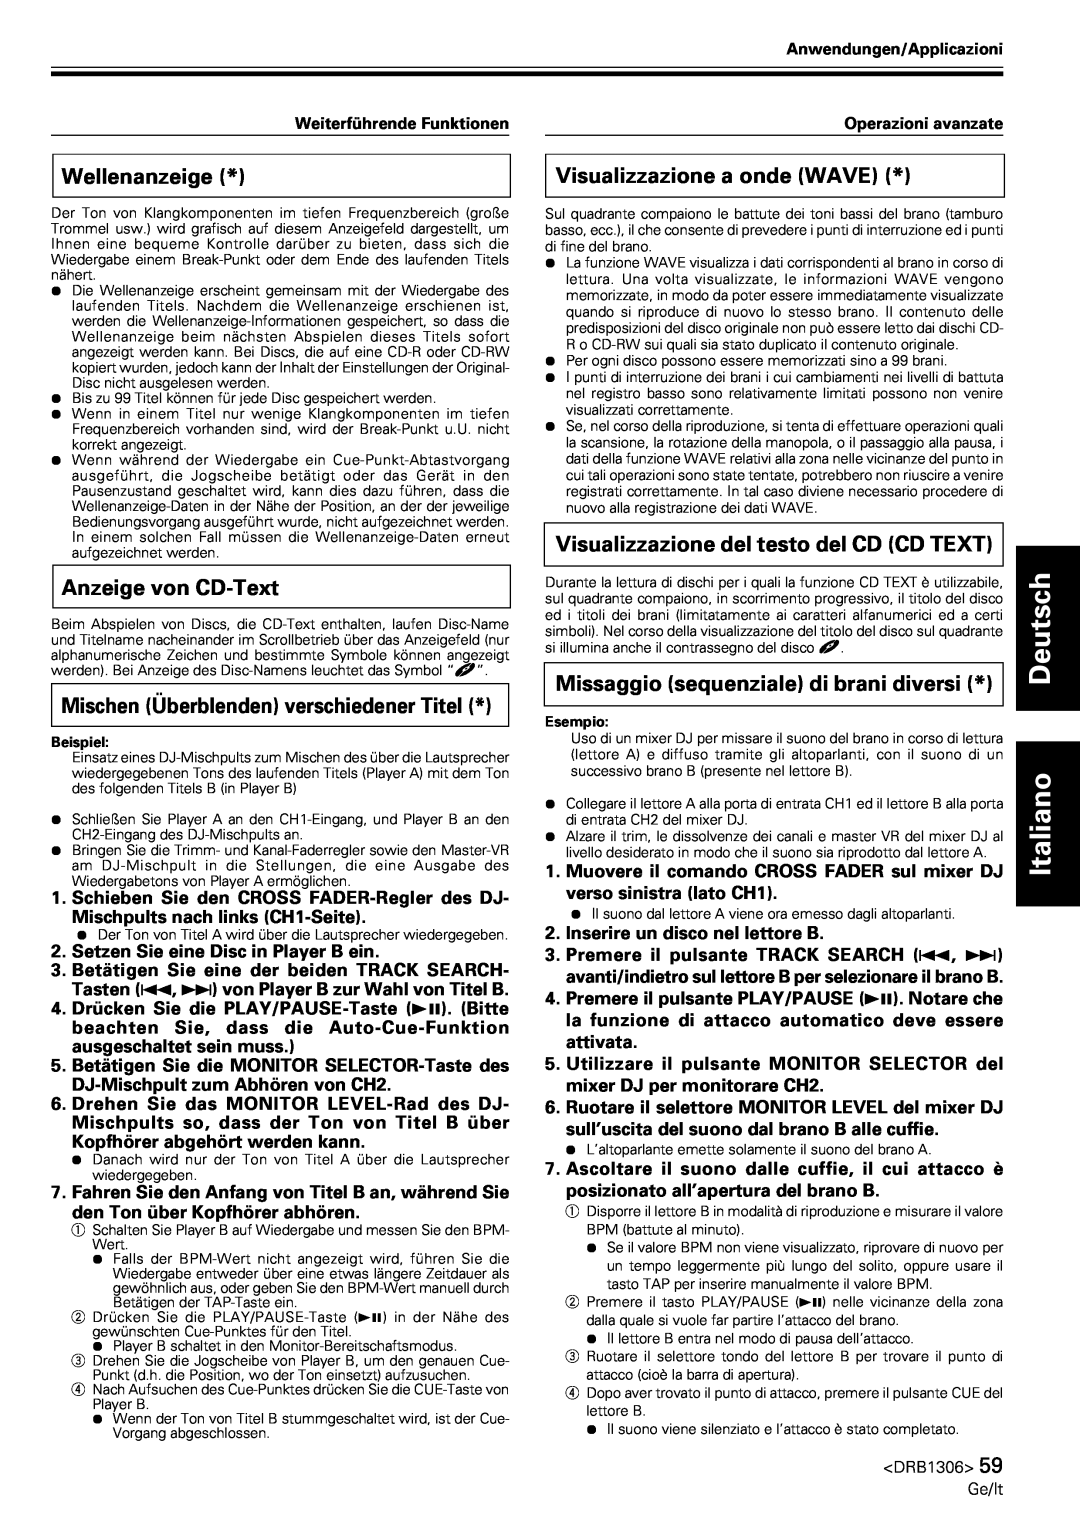 Pioneer CMX-3000 Wellenanzeige, Anzeige von CD-Text, Mischen Überblenden verschiedener Titel, Visualizzazione a onde WAVE 